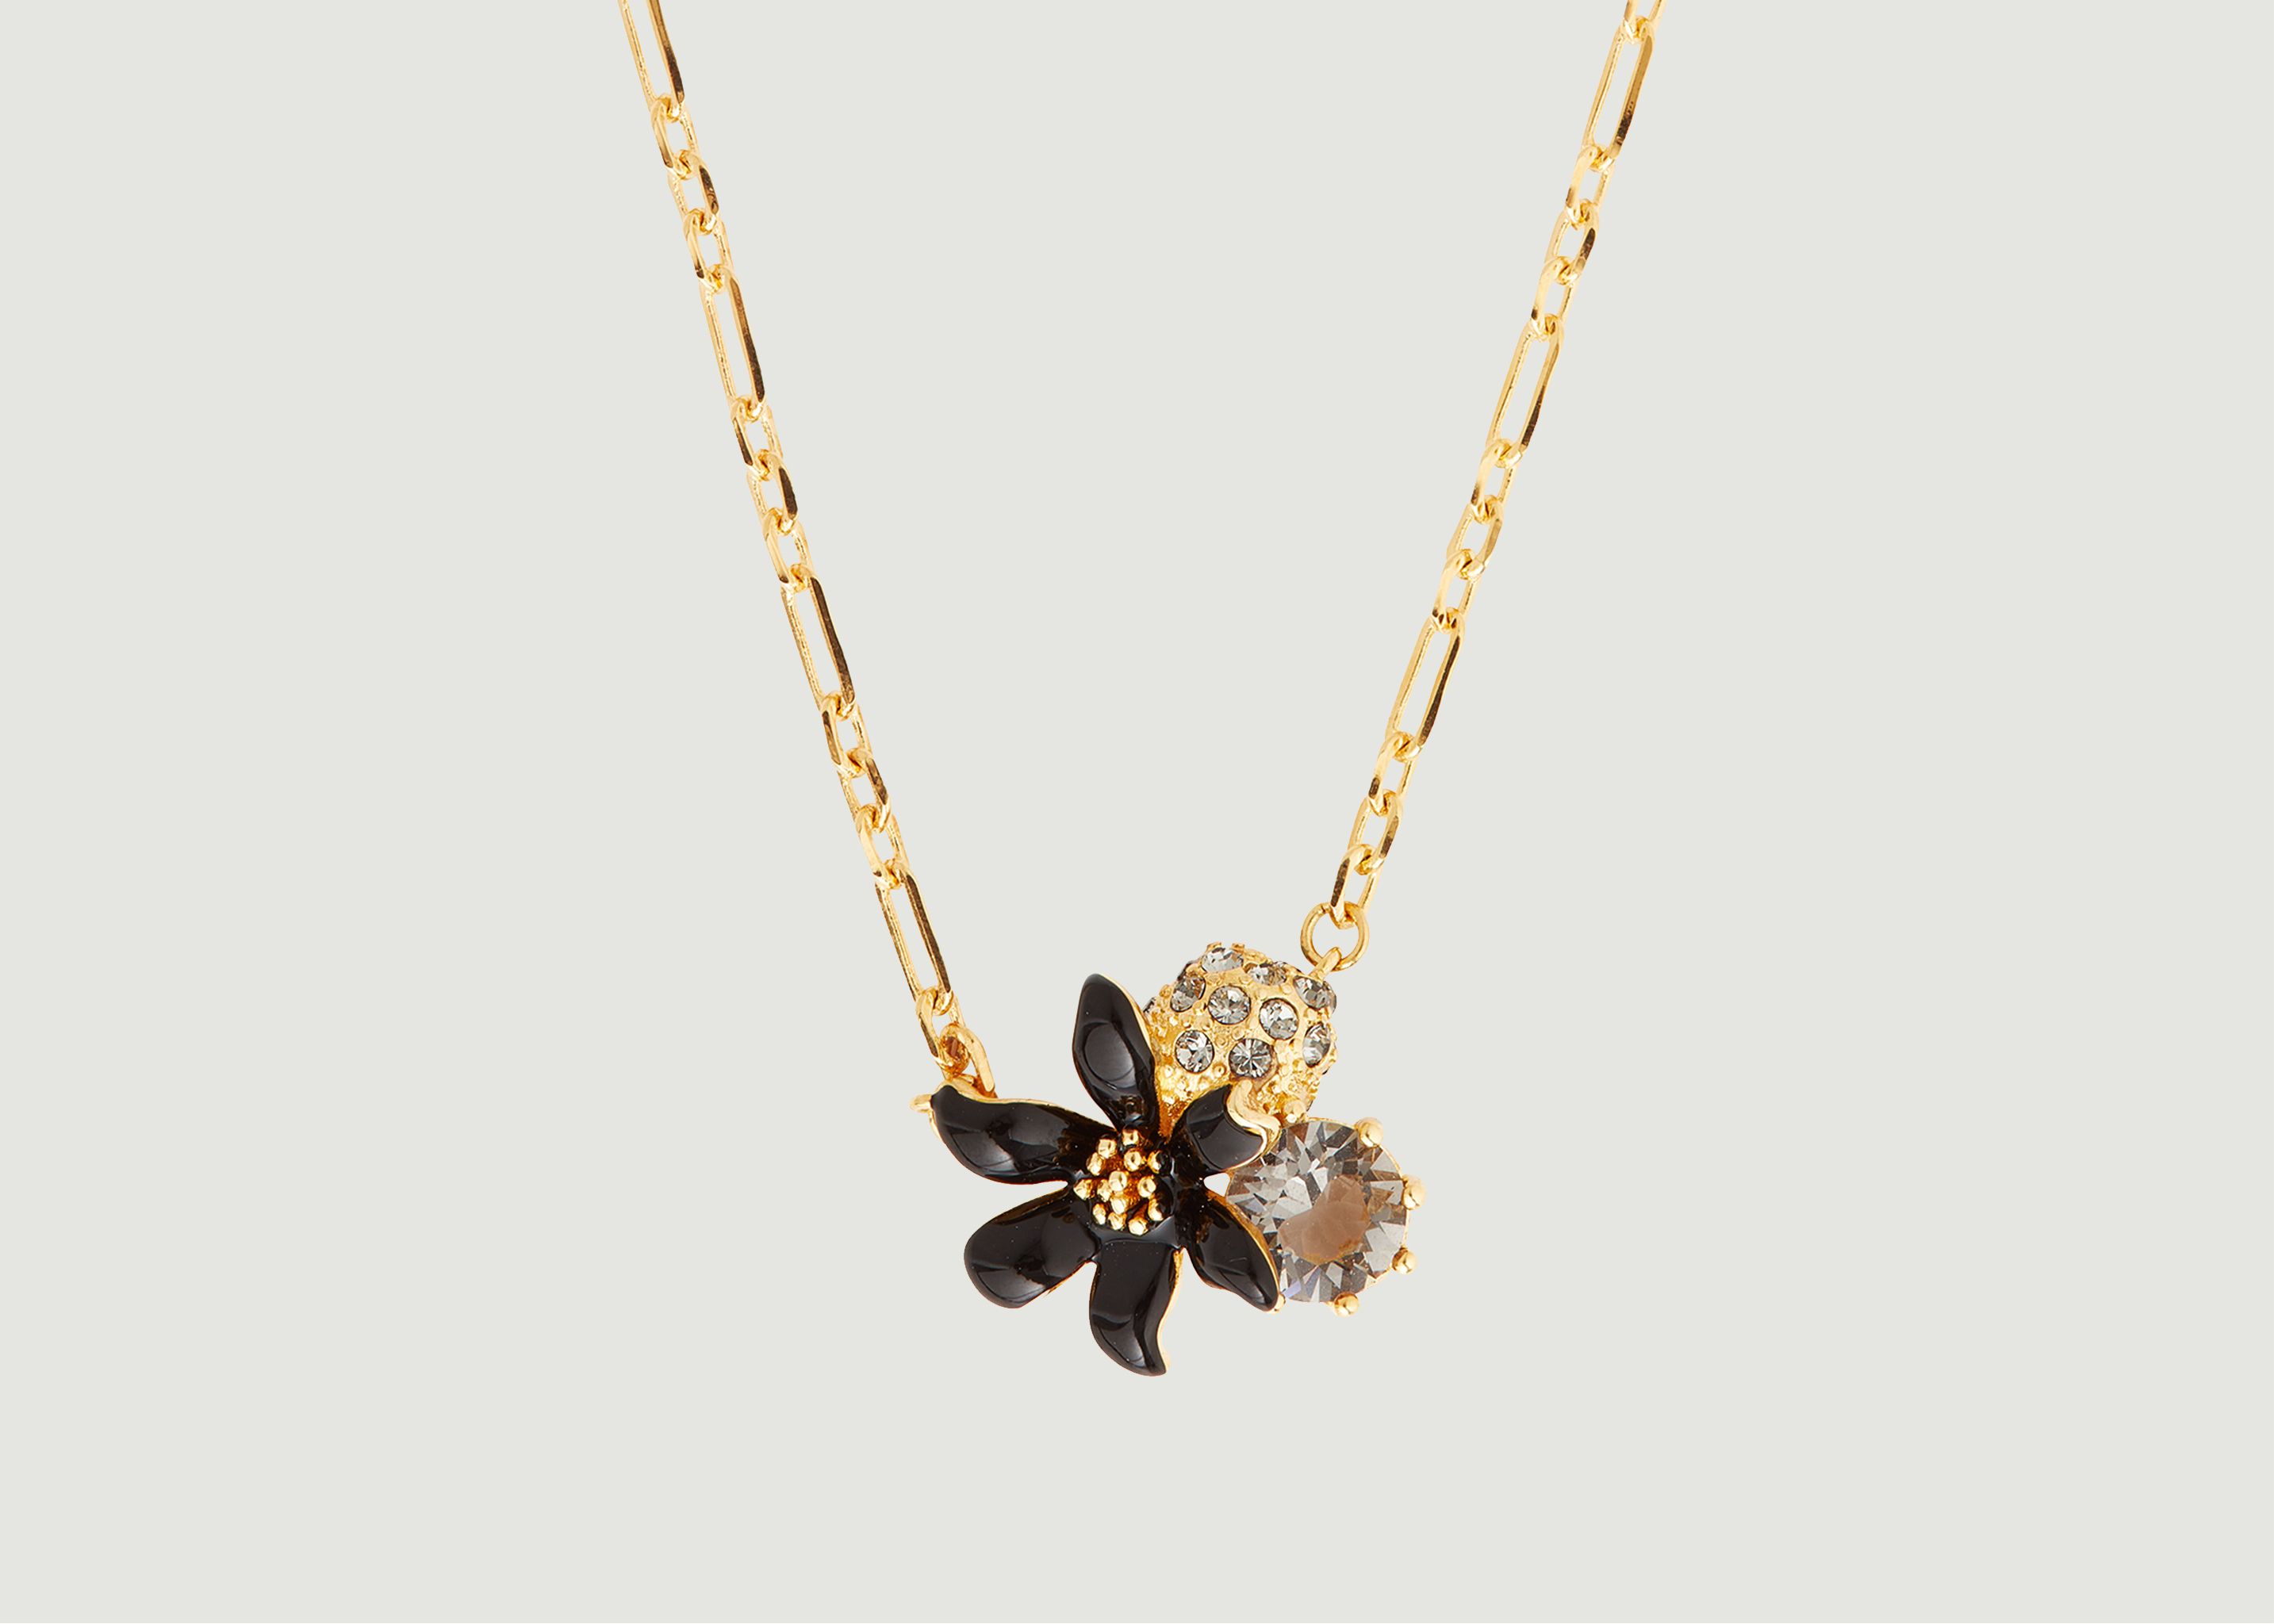 Chain necklace with fleur-de-lis pendant - Les Néréides